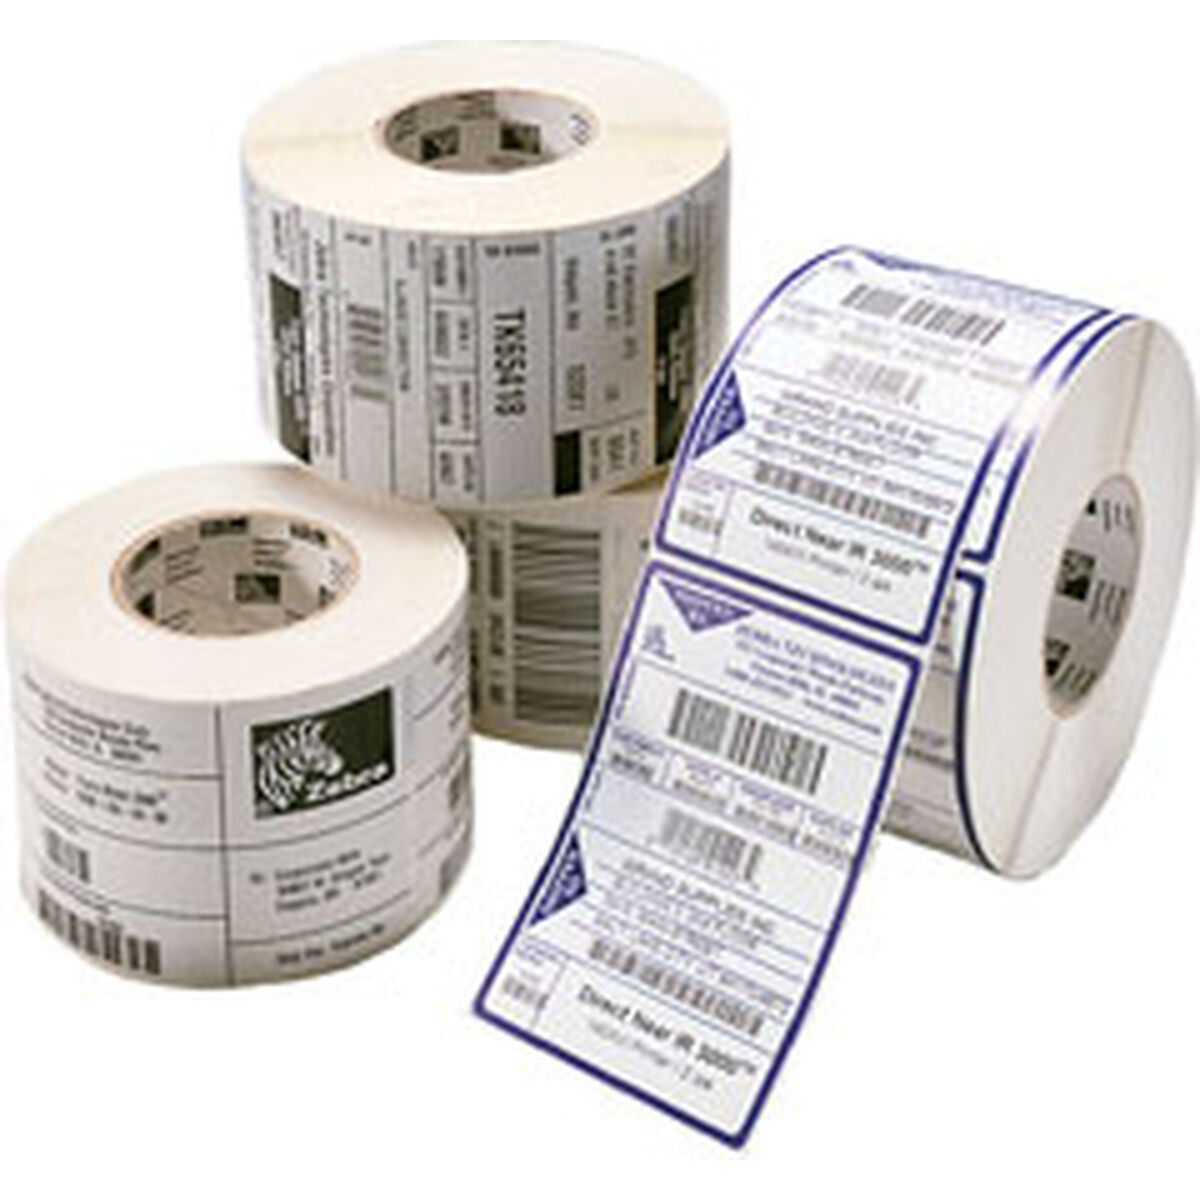 Etiquettes pour Imprimante Zebra 800261-105 Blanc